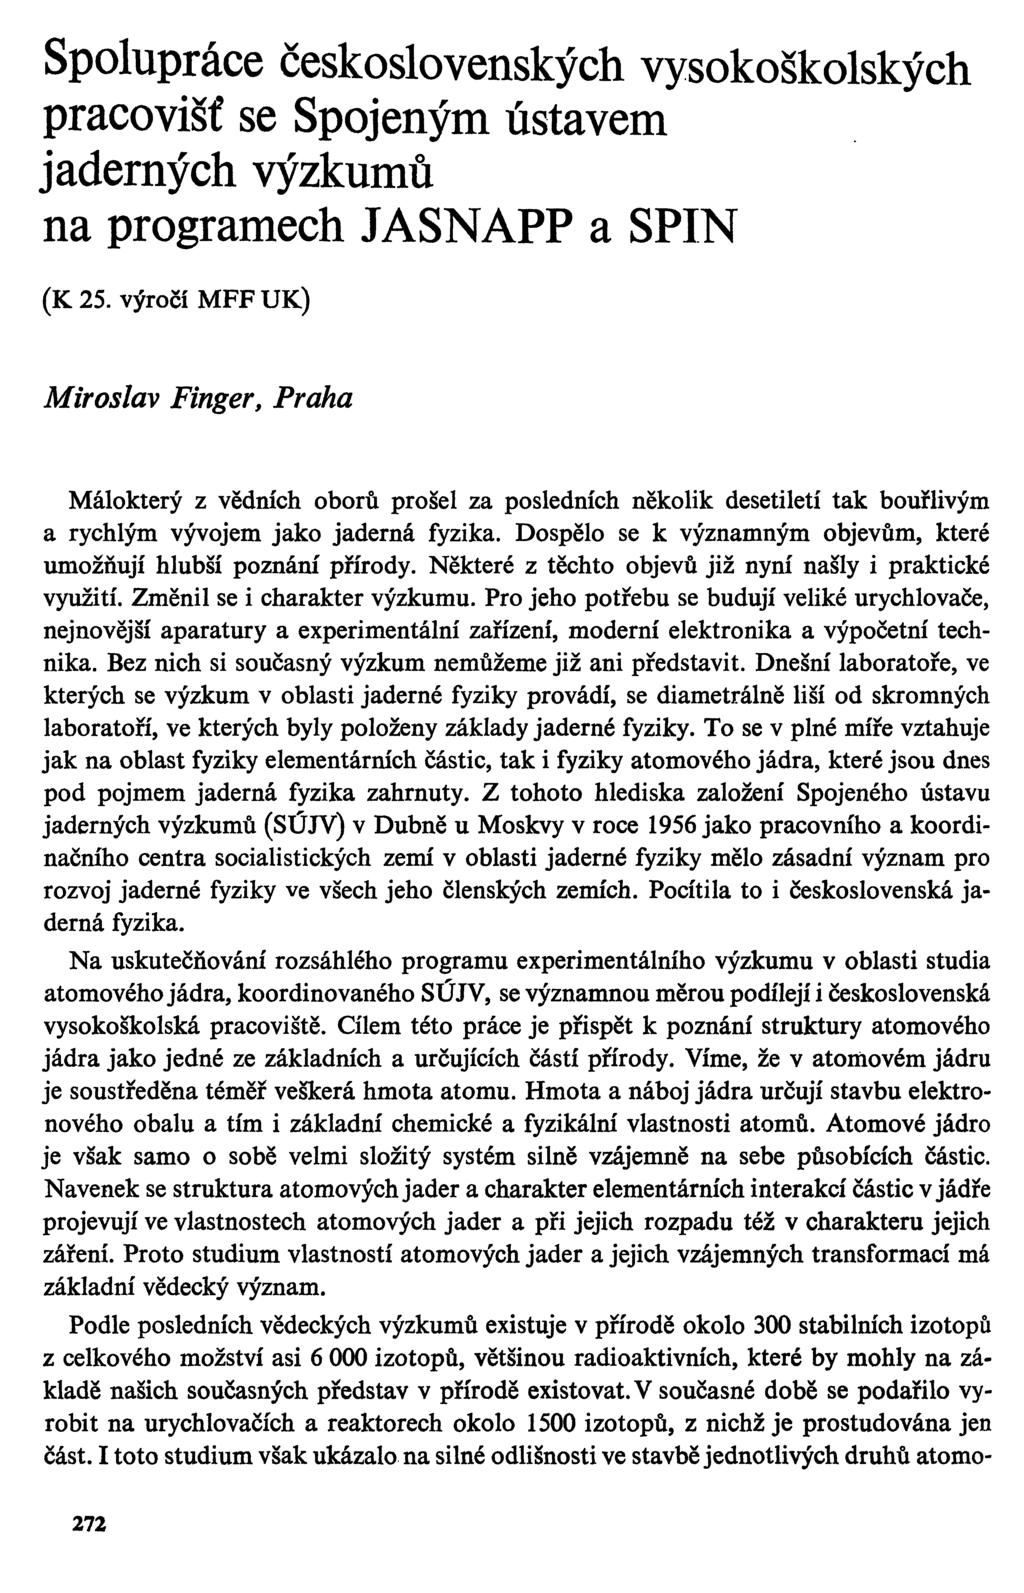 Spolupráce československých vysokoškolských pracovišť se Spojeným ústavem jaderných výzkumů na programech JASNAPP a SPIN (K25.